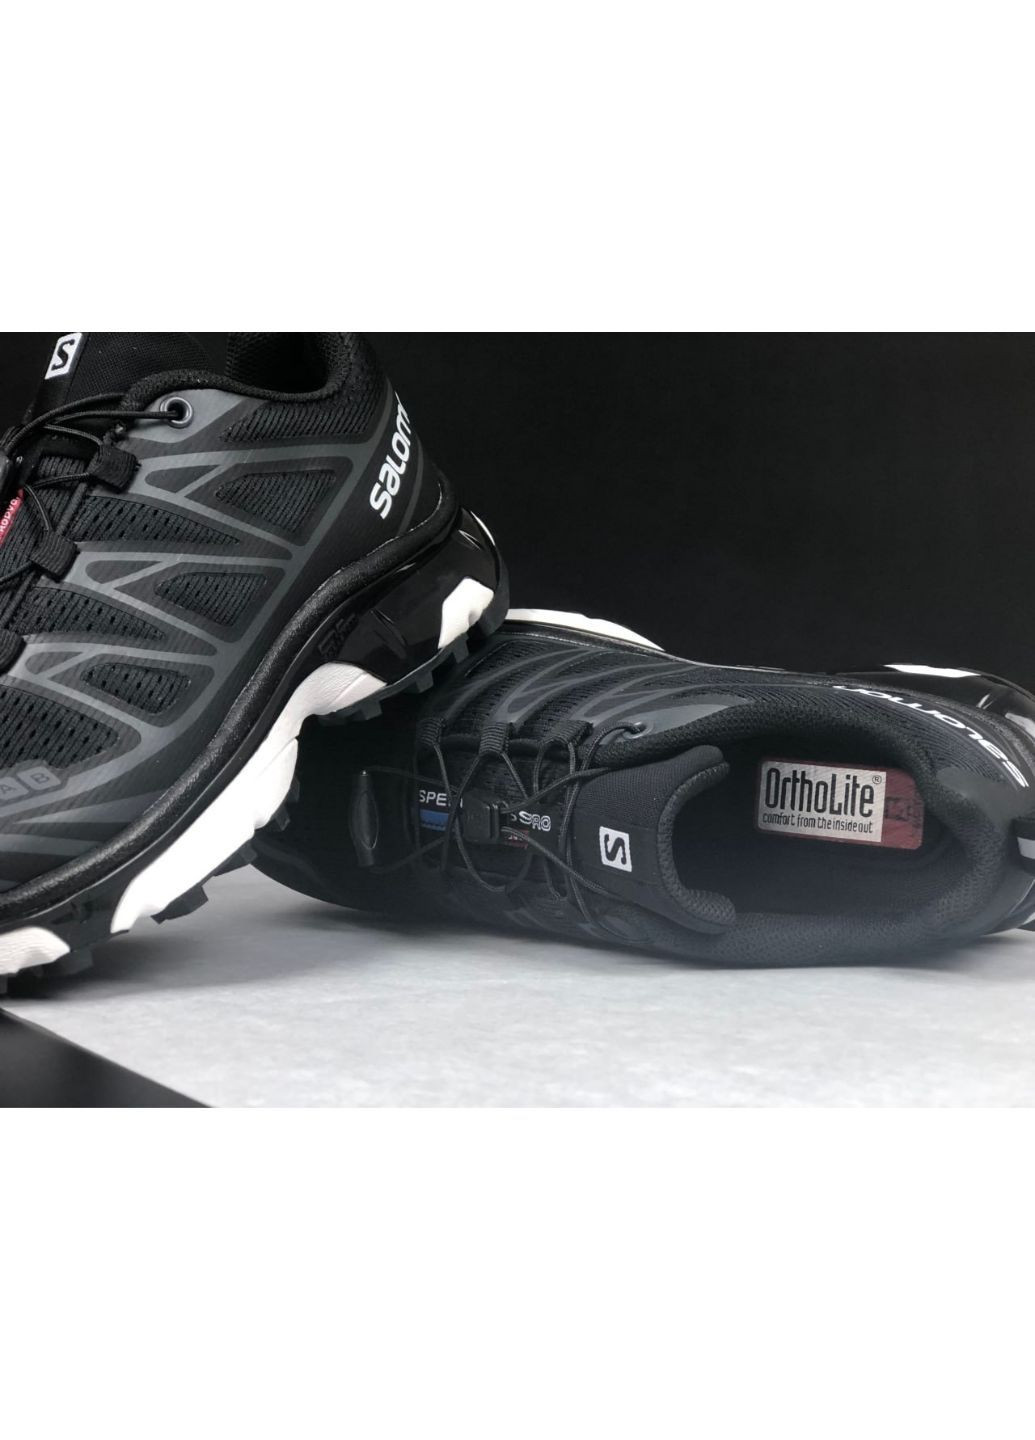 Черно-белые демисезонные мужские кроссовки черные с белым "no name" Salomon xt6